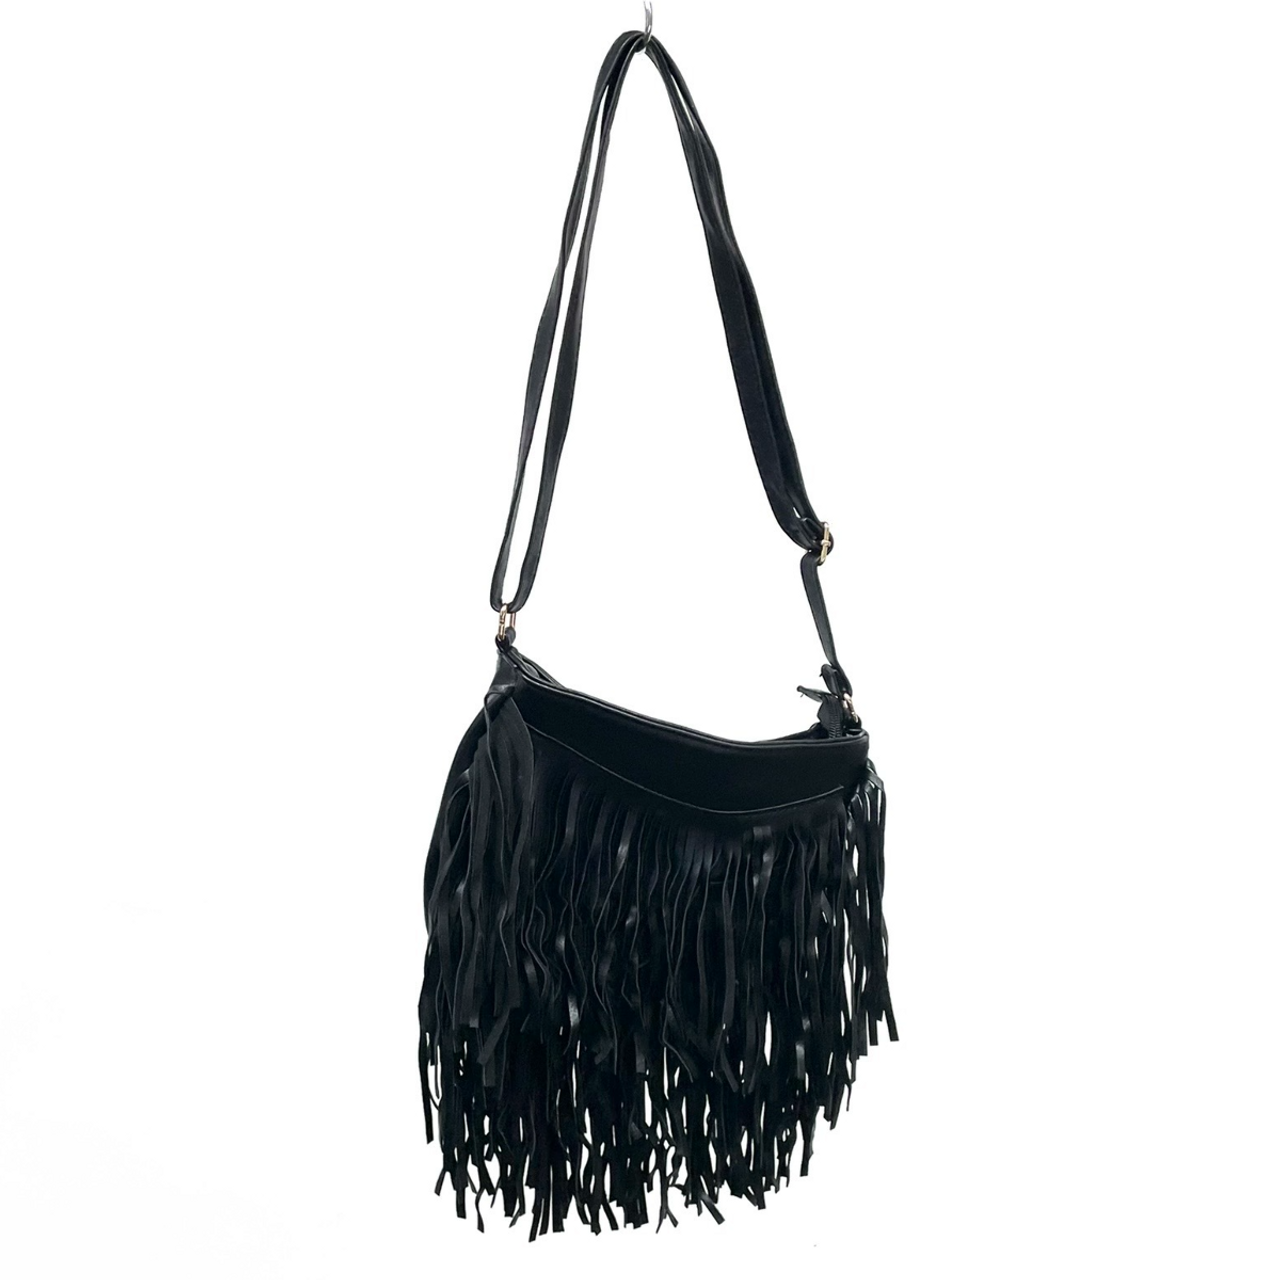 Fringe Handbag - Large - Black - Glamourplus - Ciao Bella Dresses